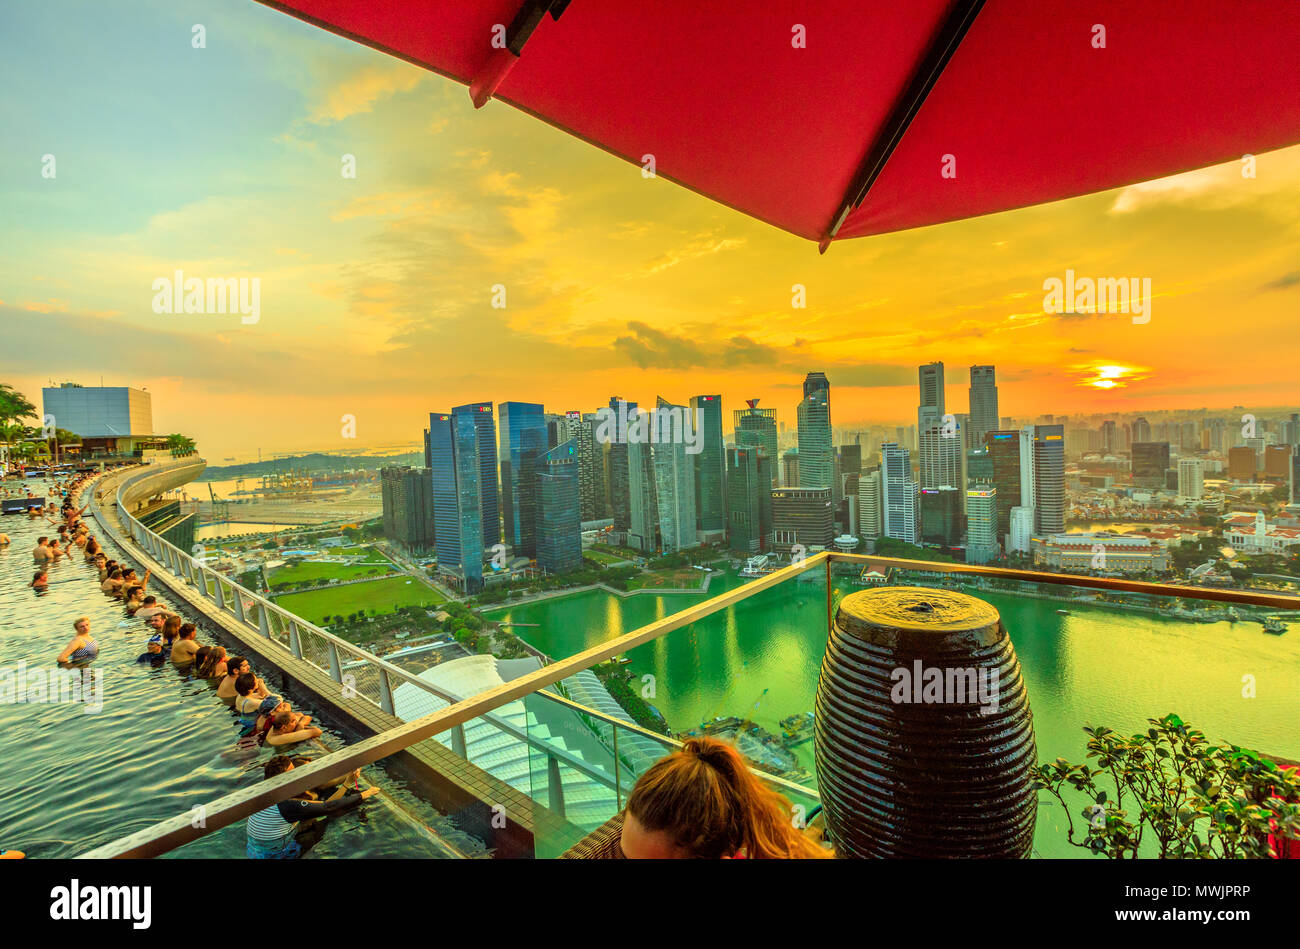 Singapur - Mai 3, 2018: CE LA VI's Club Lounge Sky Deck mit Blick auf den randlosen Pool der Skypark, dass Tops die Marina Bay Sands Hotel. Bankenviertel Skyline im Hintergrund. Sonnenuntergang geschossen. Stockfoto